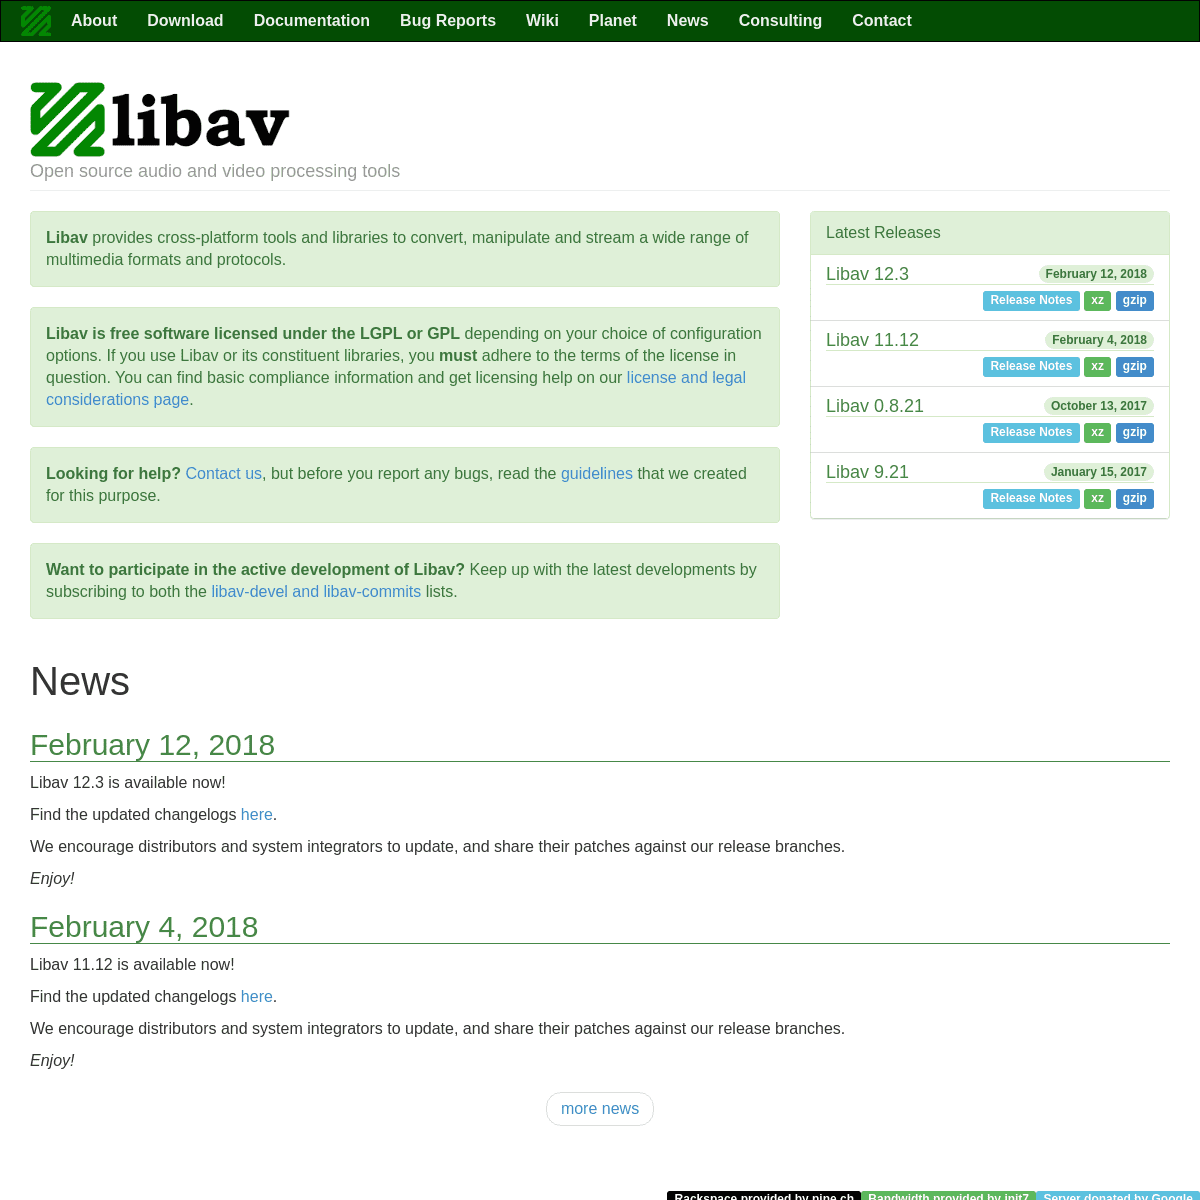 A complete backup of https://libav.org